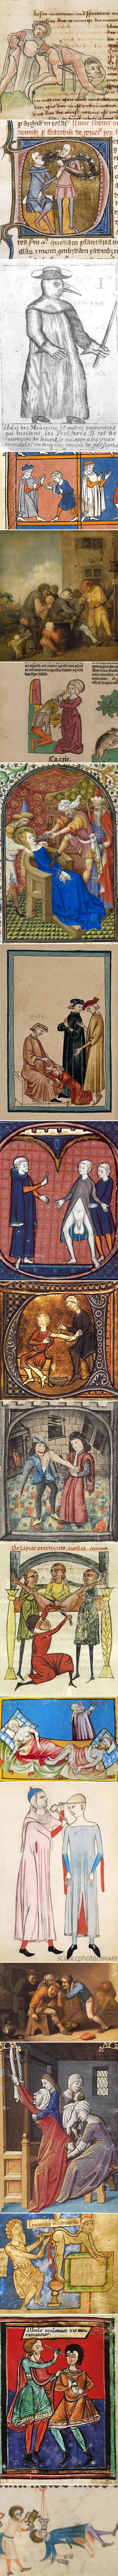 Čudne, ali zaista ČUDNE ilustracije medicinskih zahvata iz Srednjeg vijeka